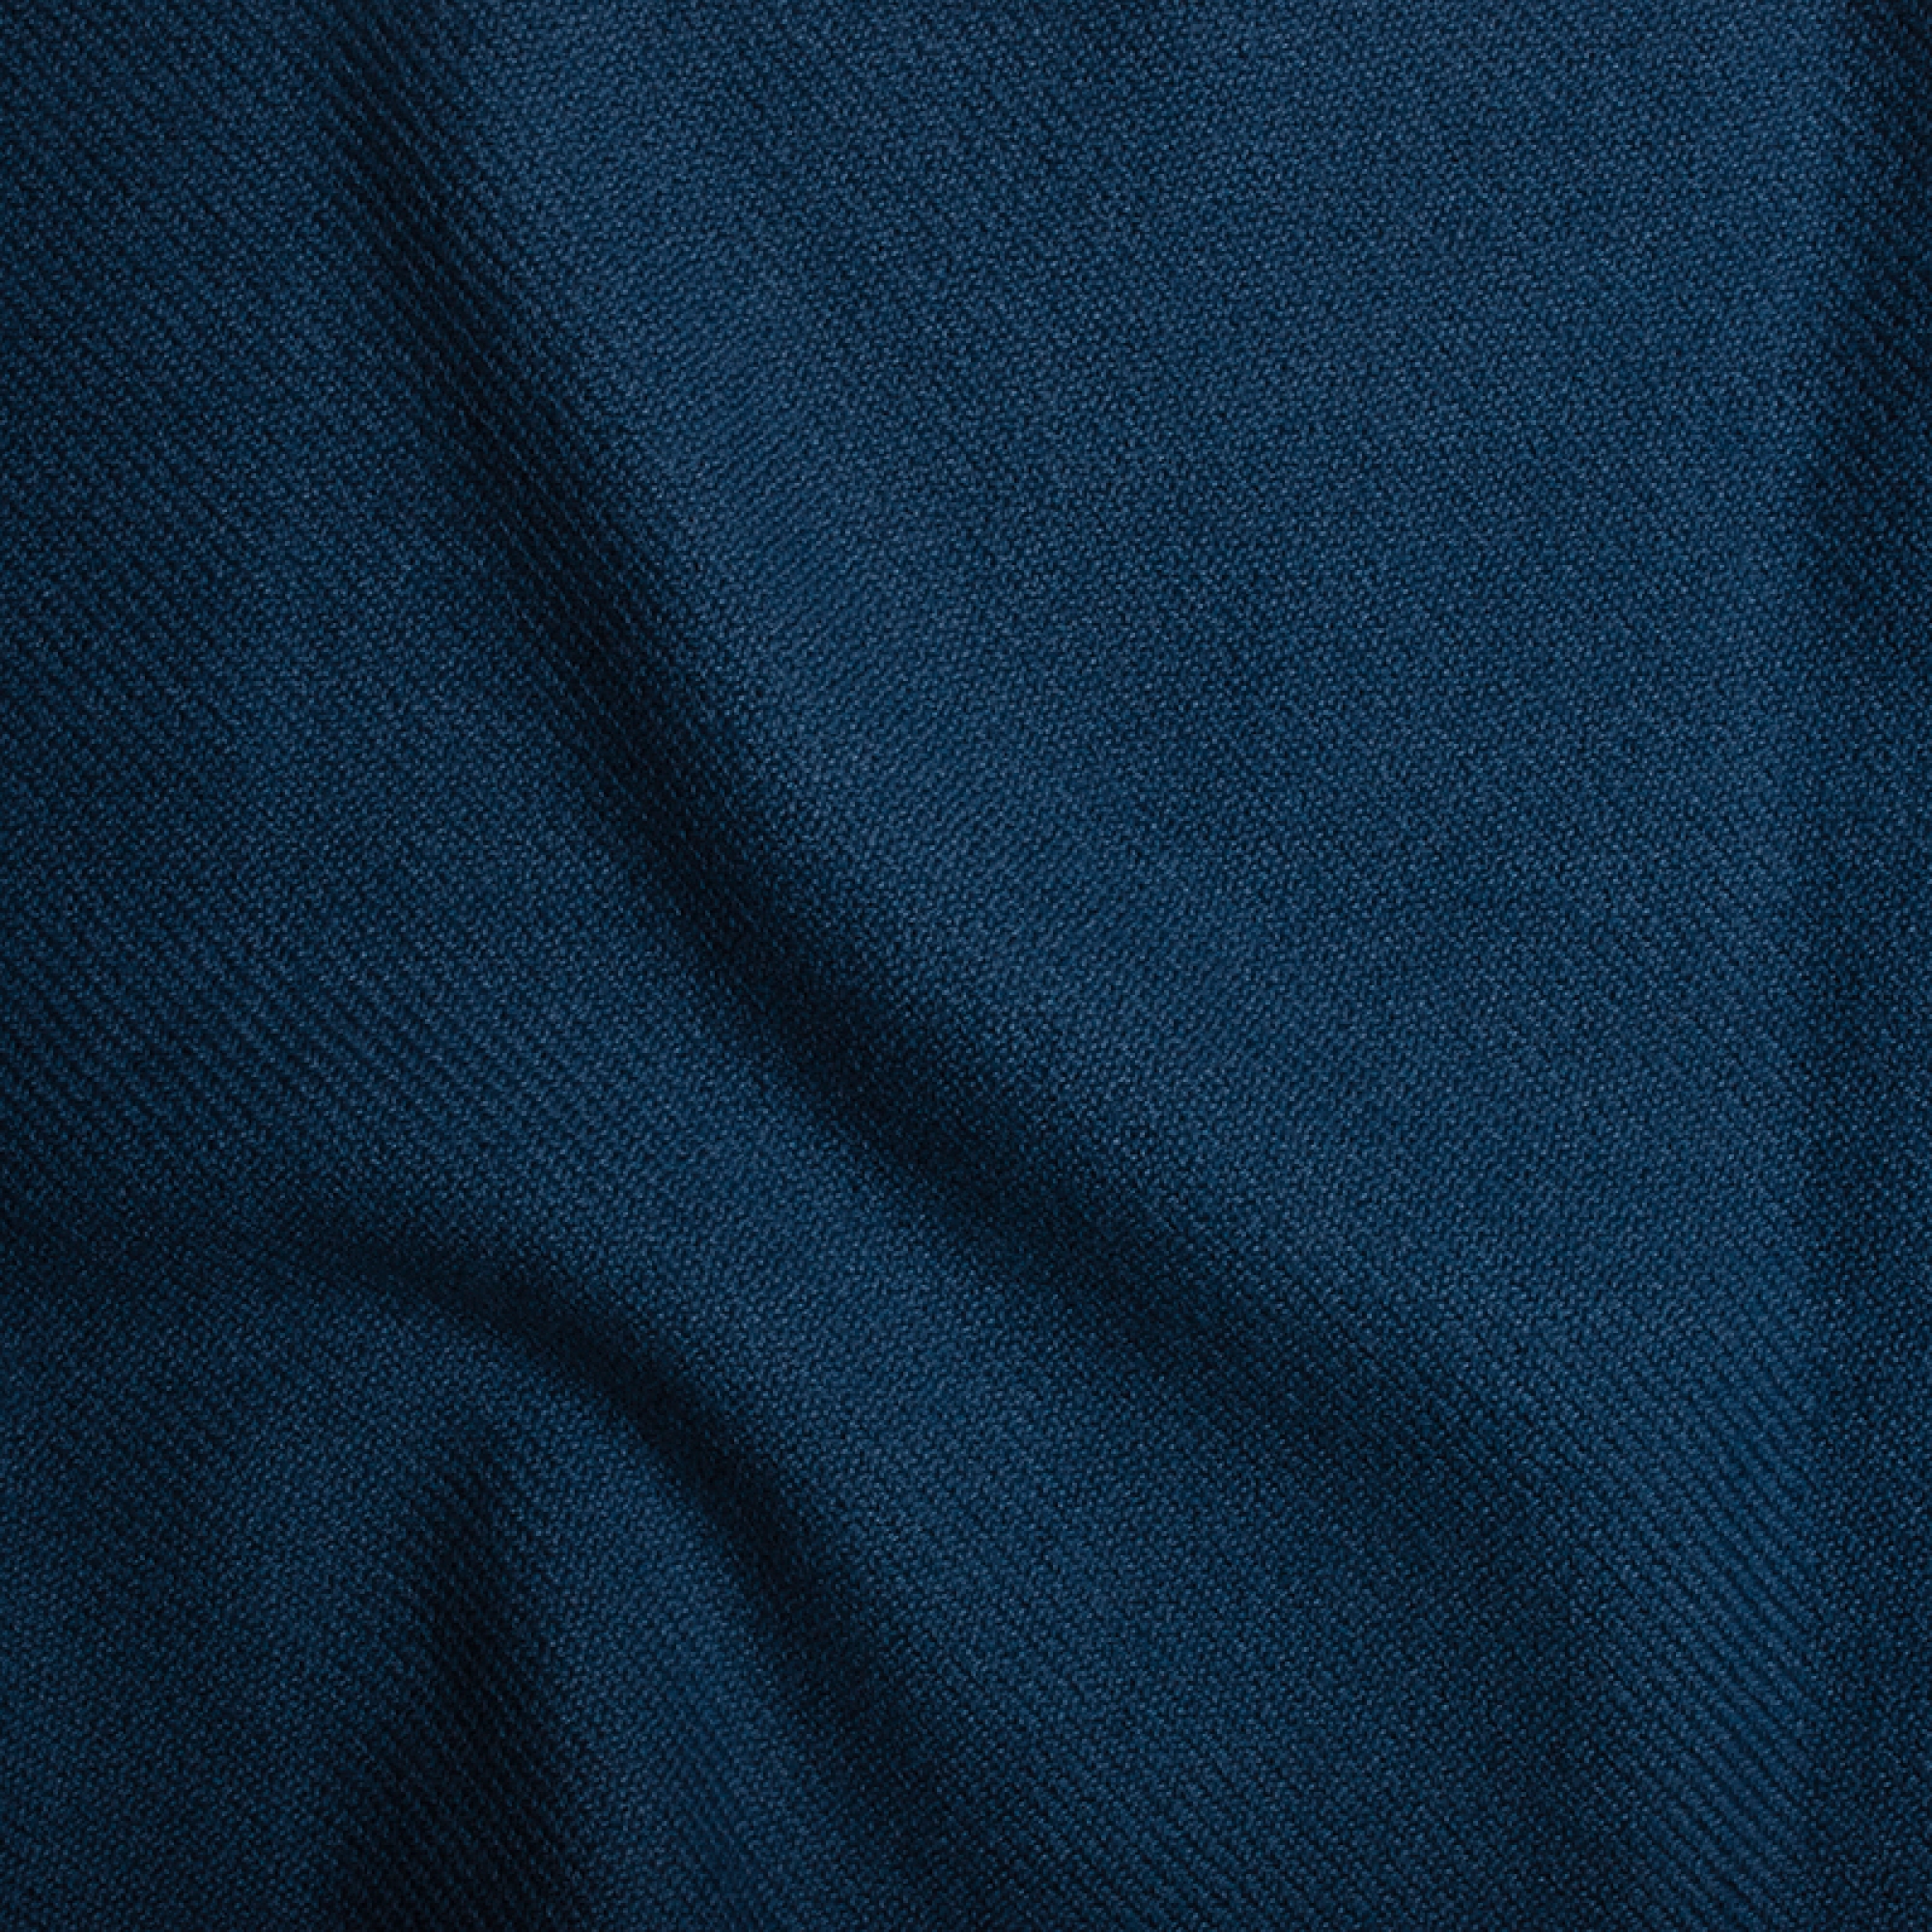 Cashmere ladies cocooning toodoo plain l 220 x 220 dark blue 220x220cm